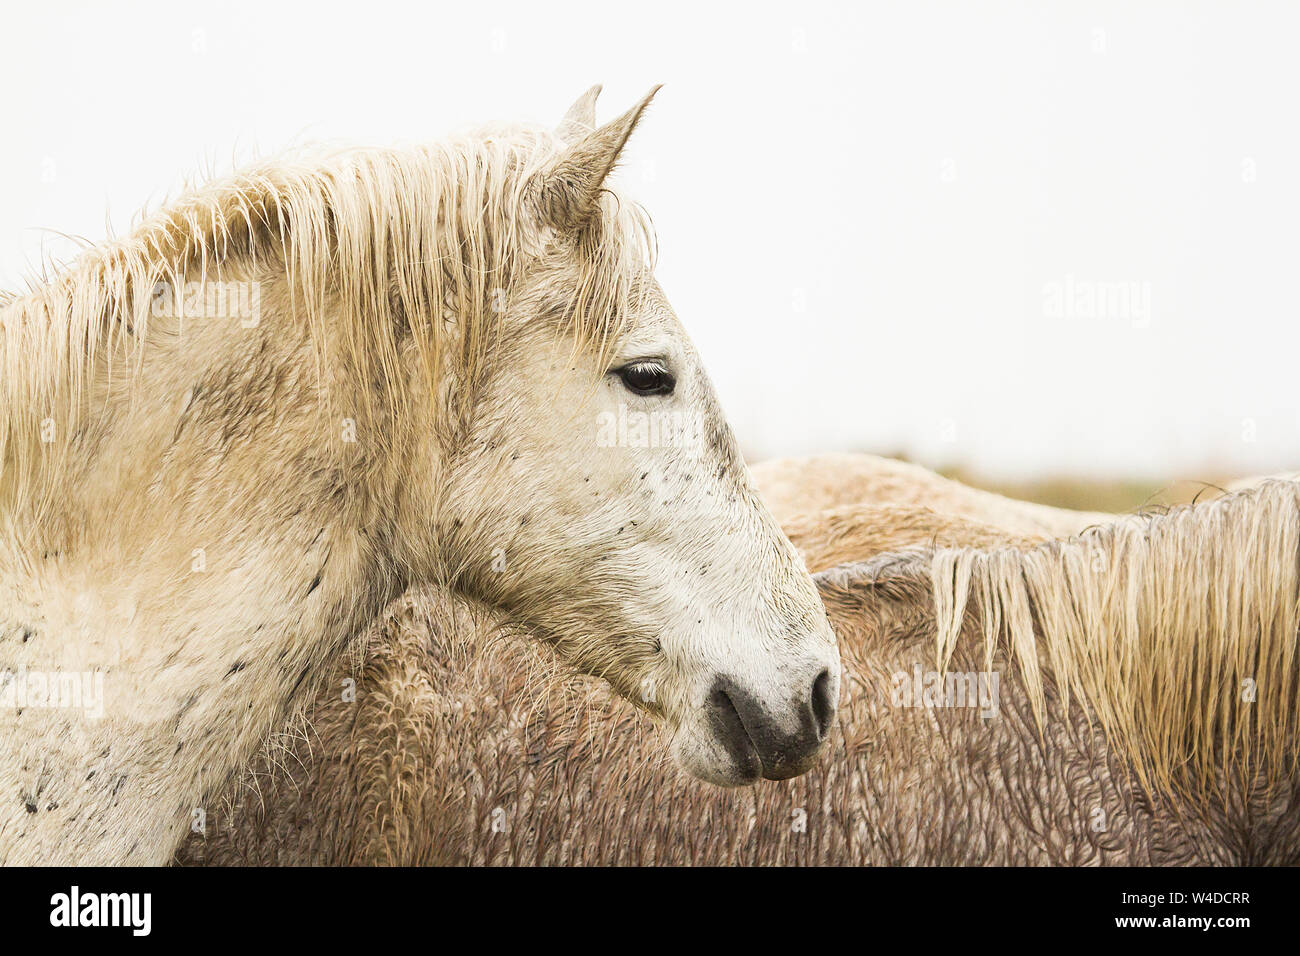 Die Camargue in Frankreich ist berühmt für seine schönen weißen Pferde. Überraschend, dass die Fohlen werden dunkel geboren und langsam weiß wie sie reifen. Stockfoto